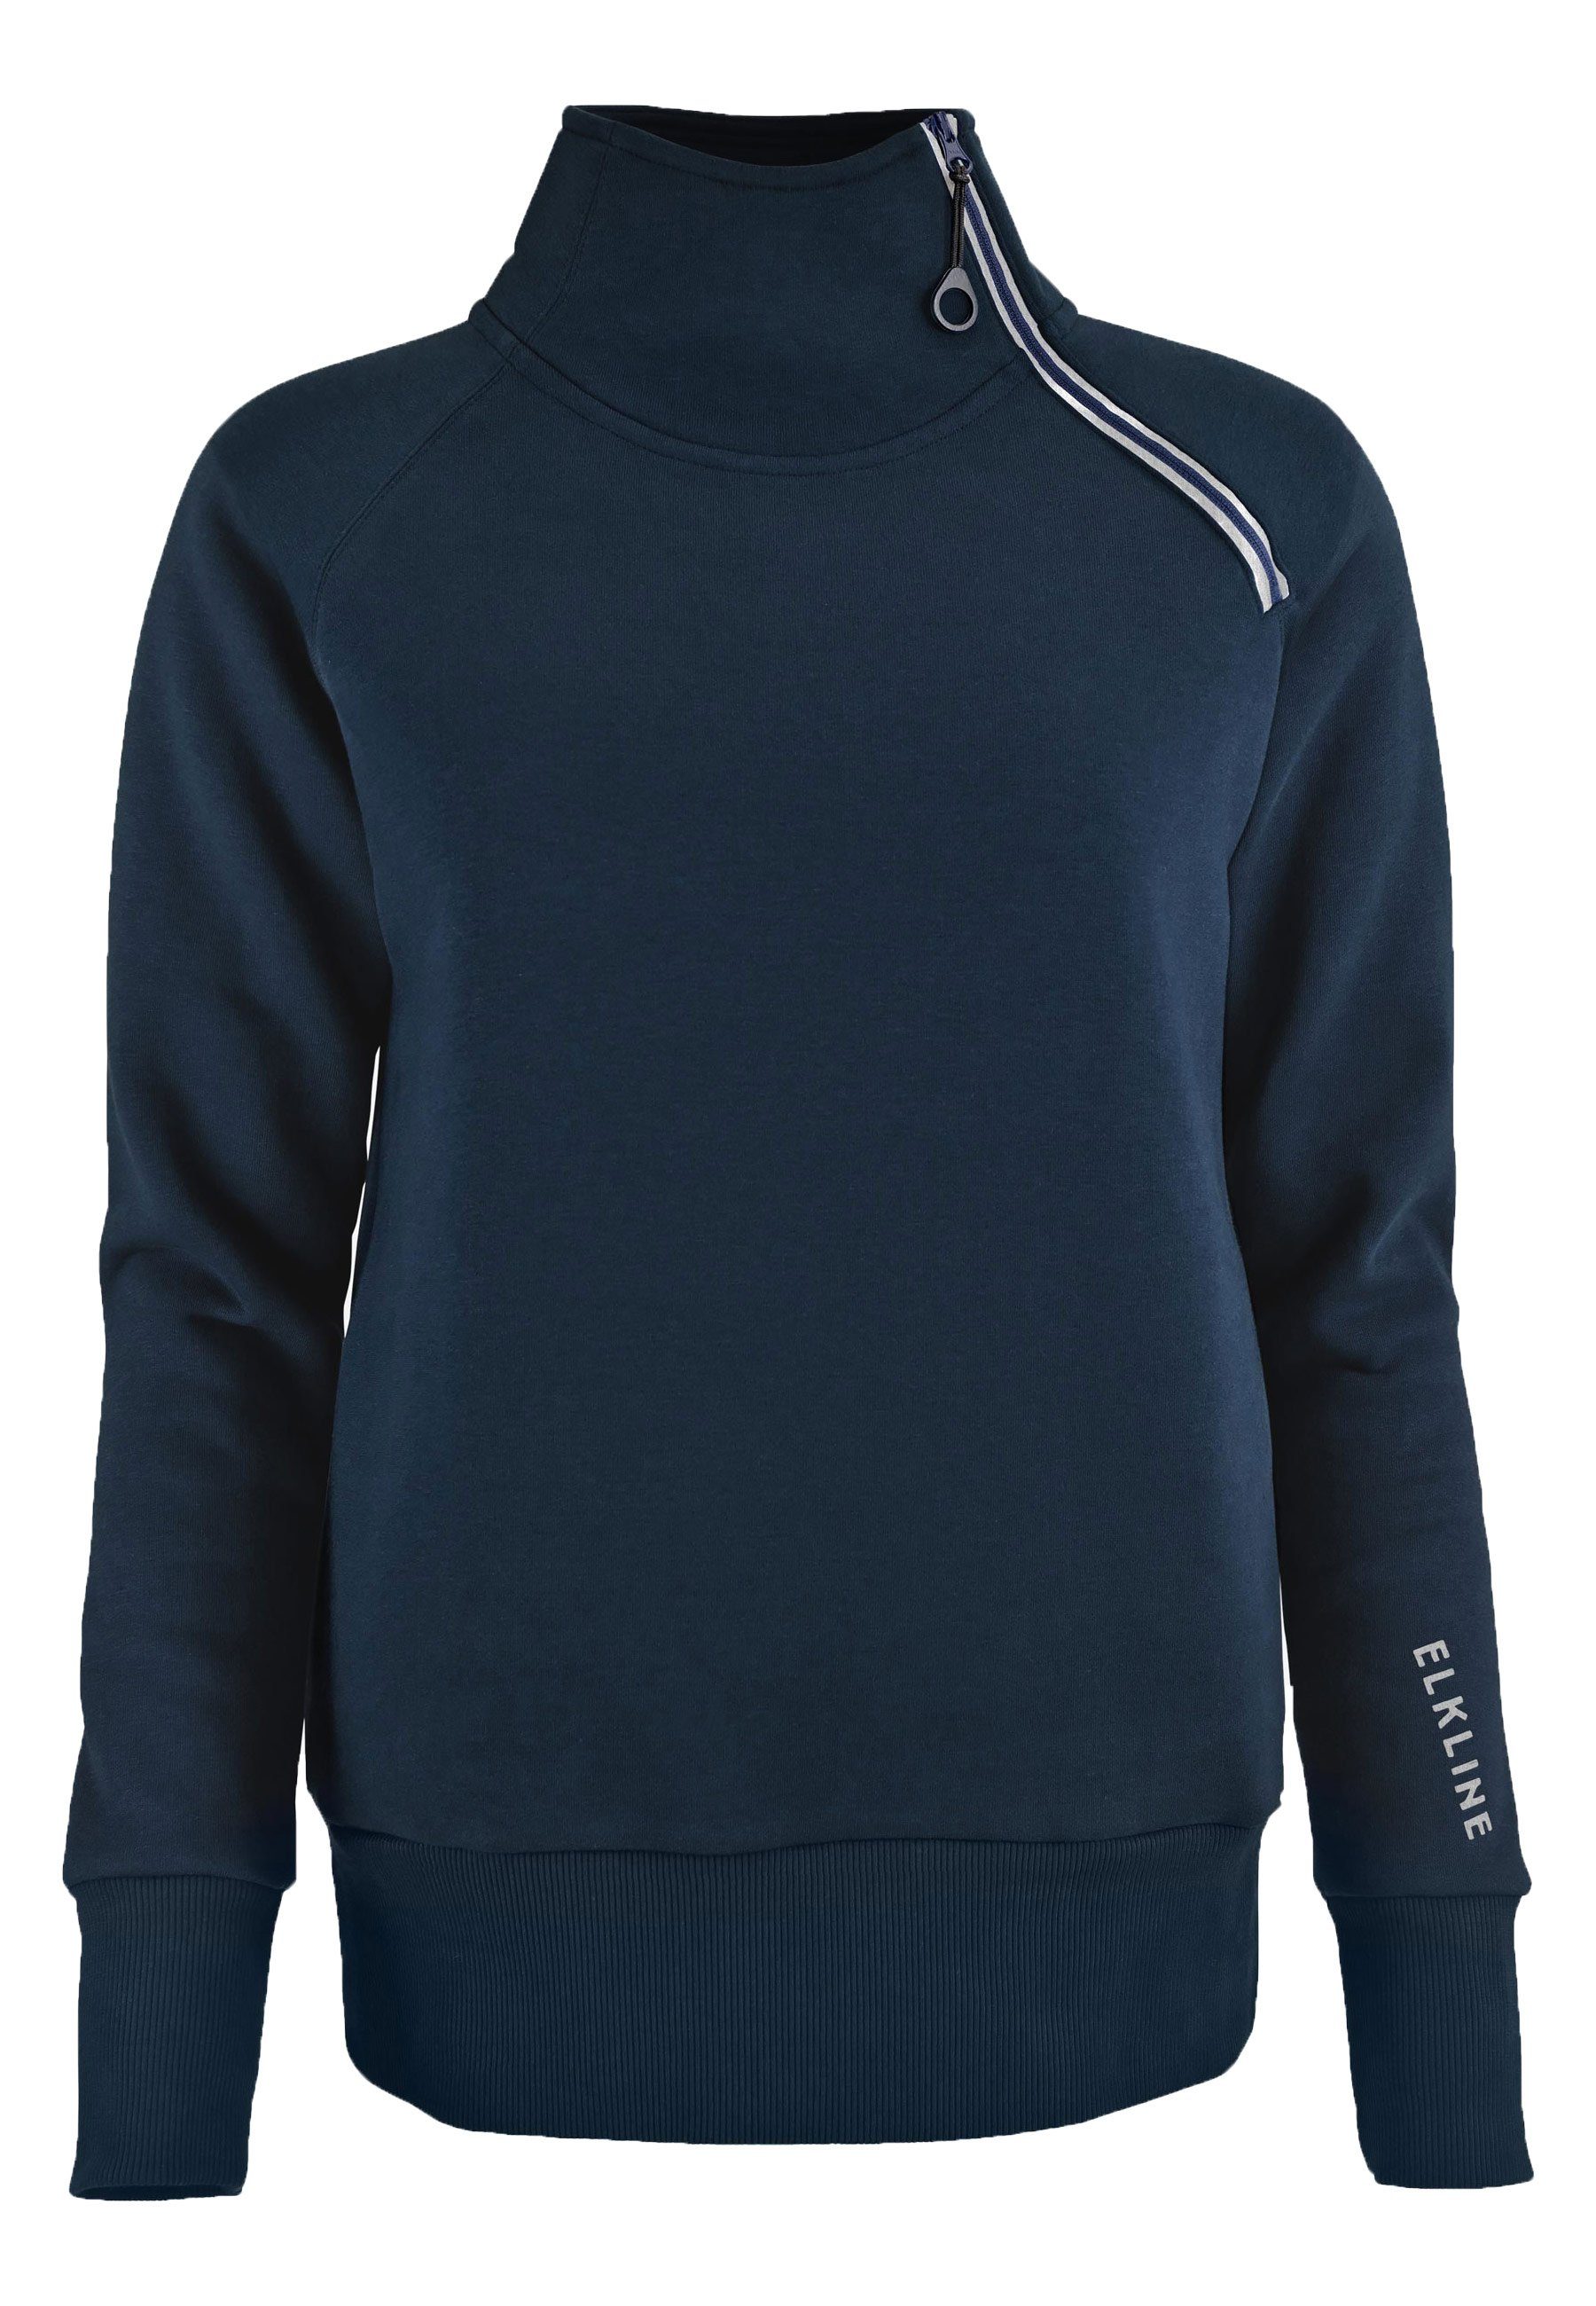 Elkline Sweatshirt Performance Stehkragen mit Reißverschluss und Seitentaschen blueshadow